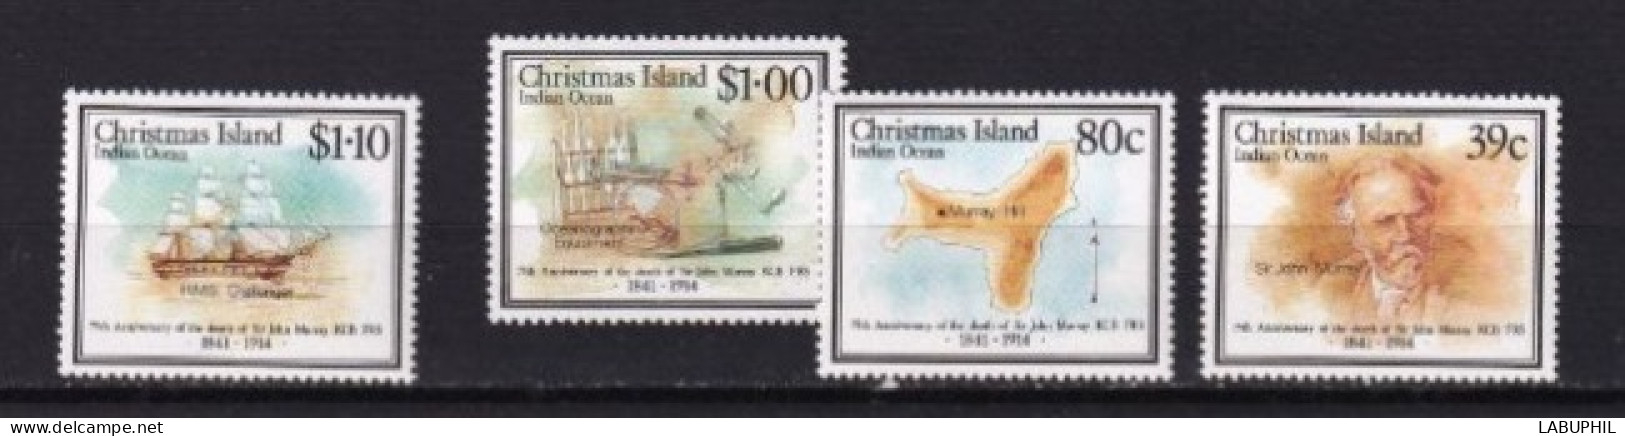 CHRISTHMAS ISLAND  MNH  ** 1989 - Christmas Island